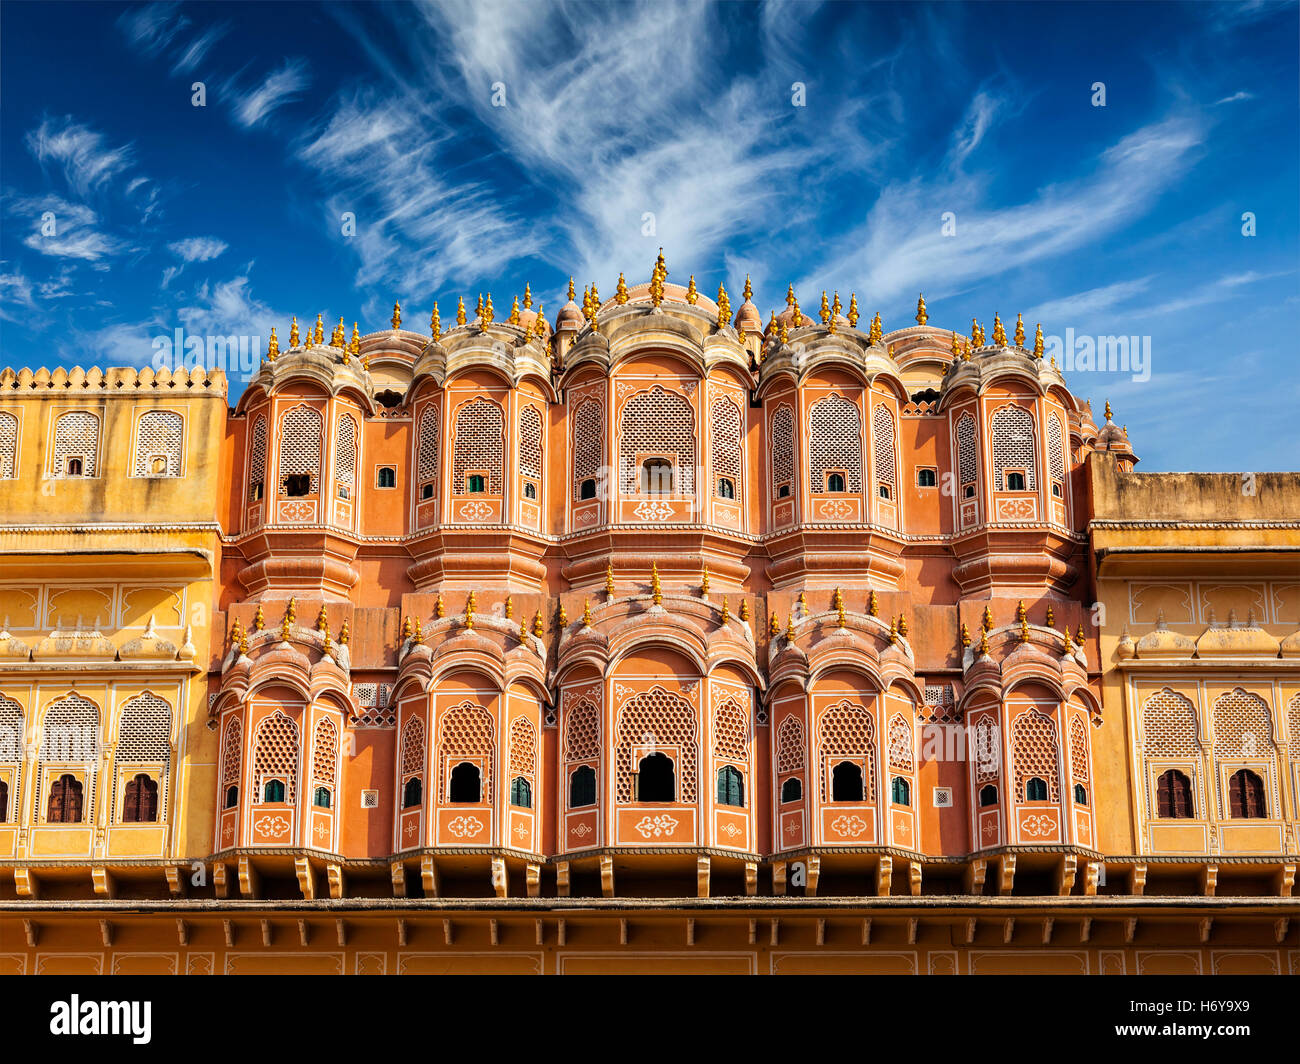 Hawa Mahal - Palace of the Winds, Jaipur, Rajasthan Stock Photo